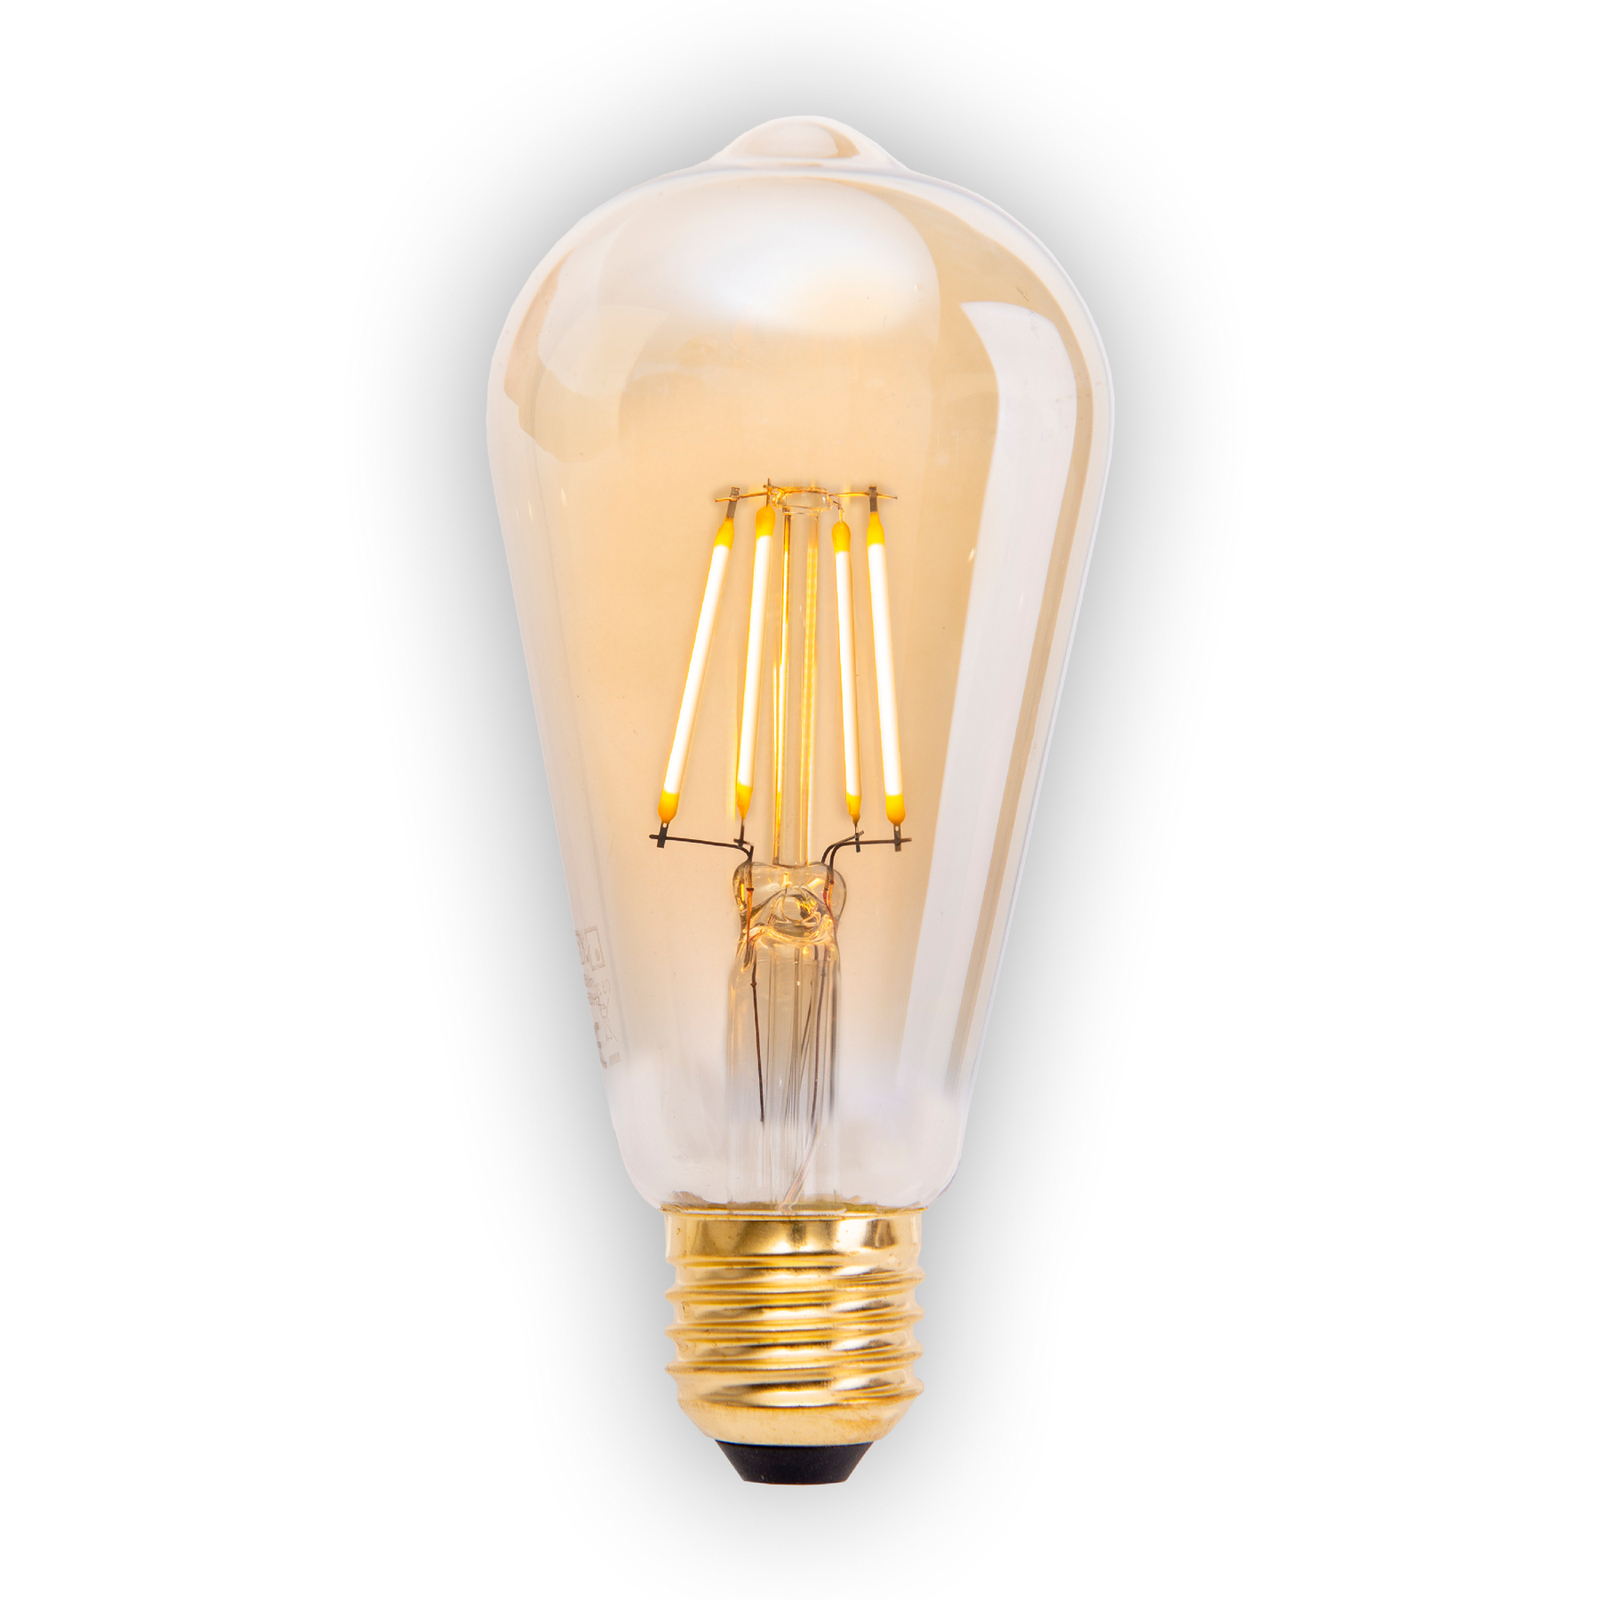 Ampoule LED E27 4W 320lm blanc chaud dim, pack 4